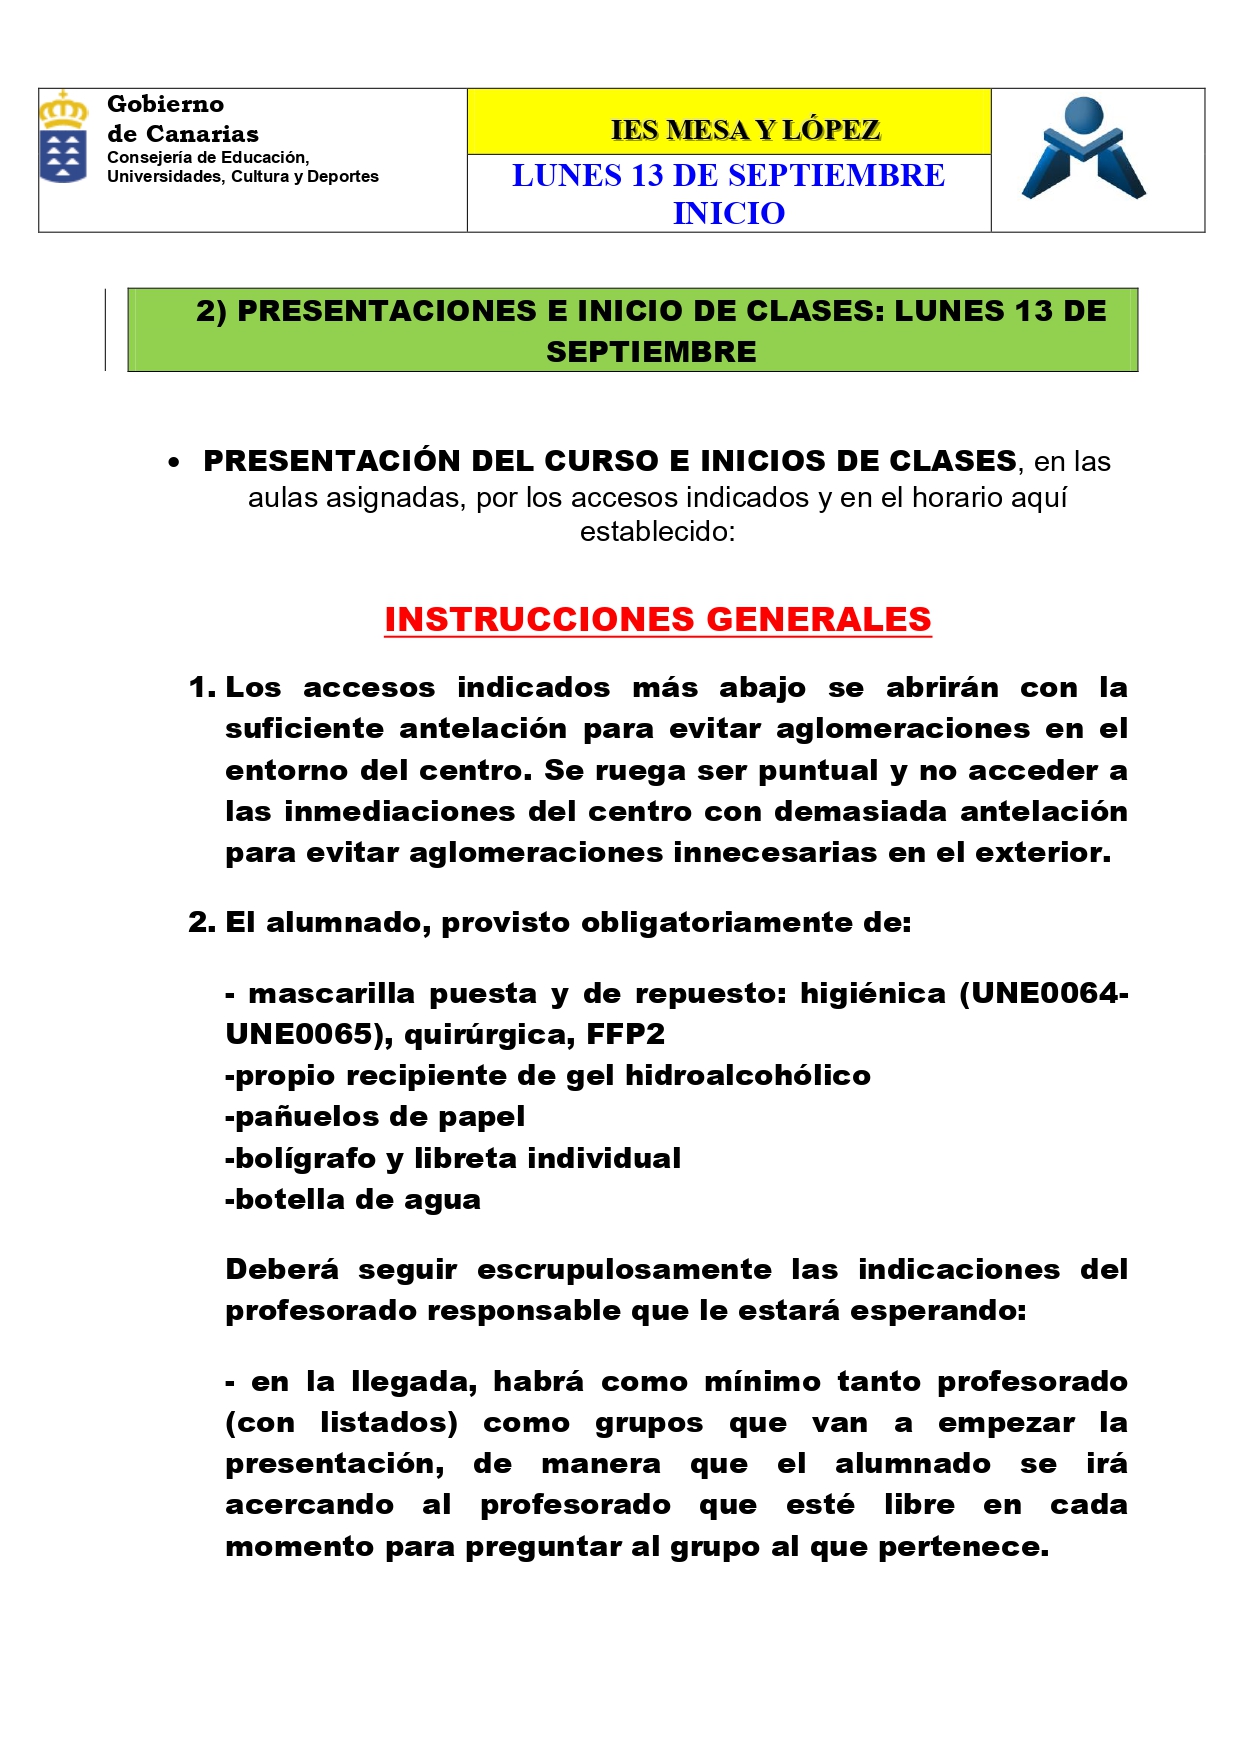 PRESENTACIONES E INICIO DE CLASES 13 SEPTIEMBRE page 0004